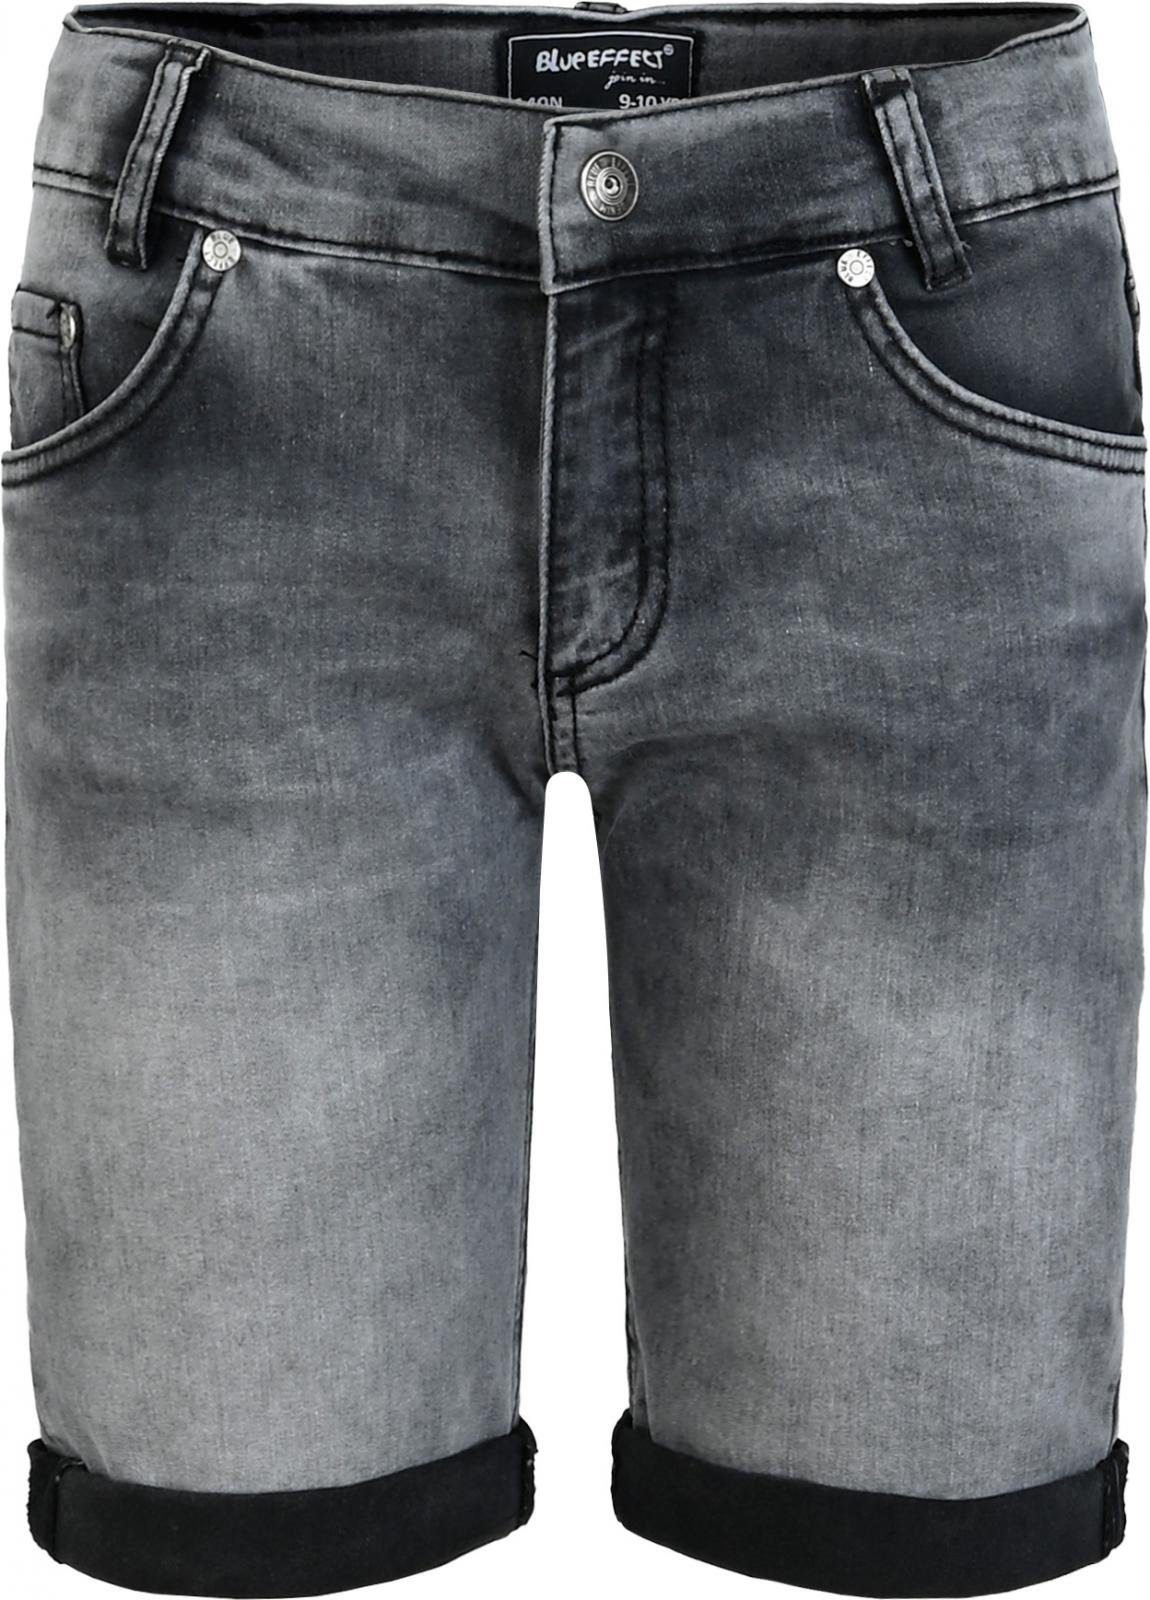 Plus BLUE EFFECT Jeansshorts Größe Jeans-Shorts